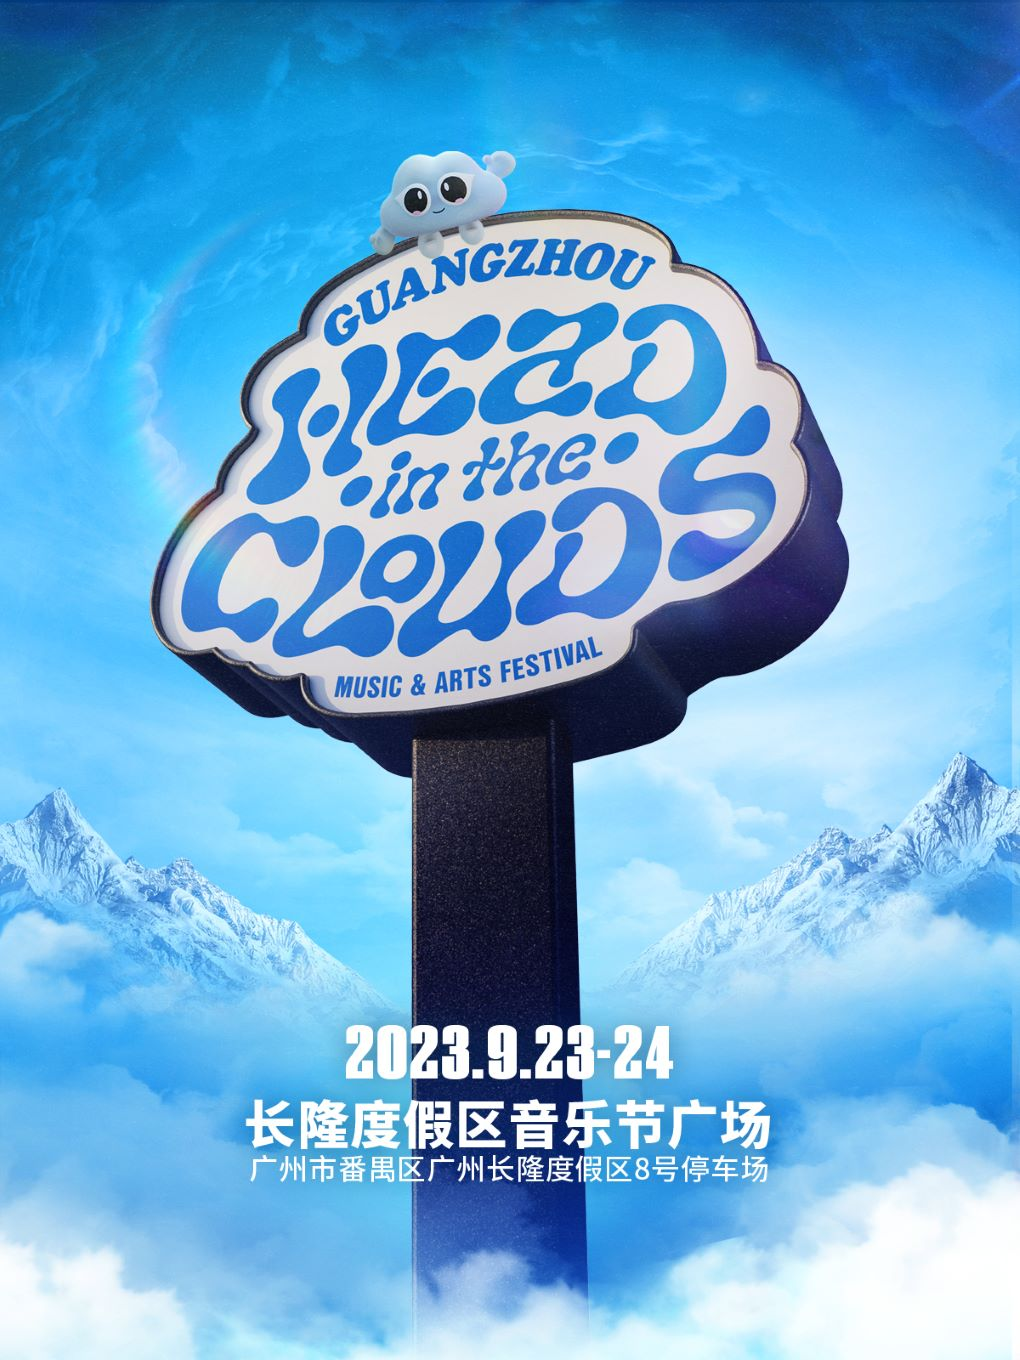 [广州]「马思唯/阿达/rich brian」88rising音乐艺术节-Head In The Clouds云思妙想广州站